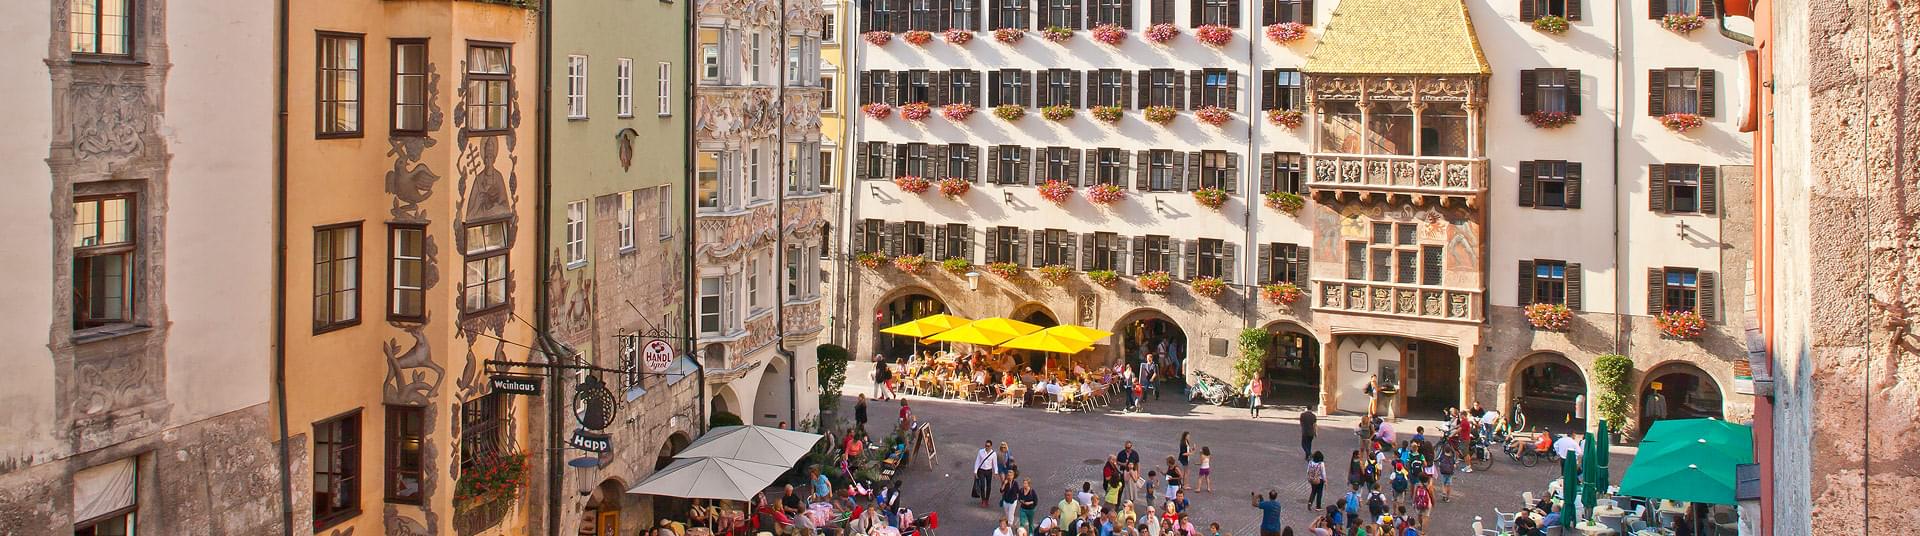 Das goldene Dachl der Landeshauptstadt von Tirol